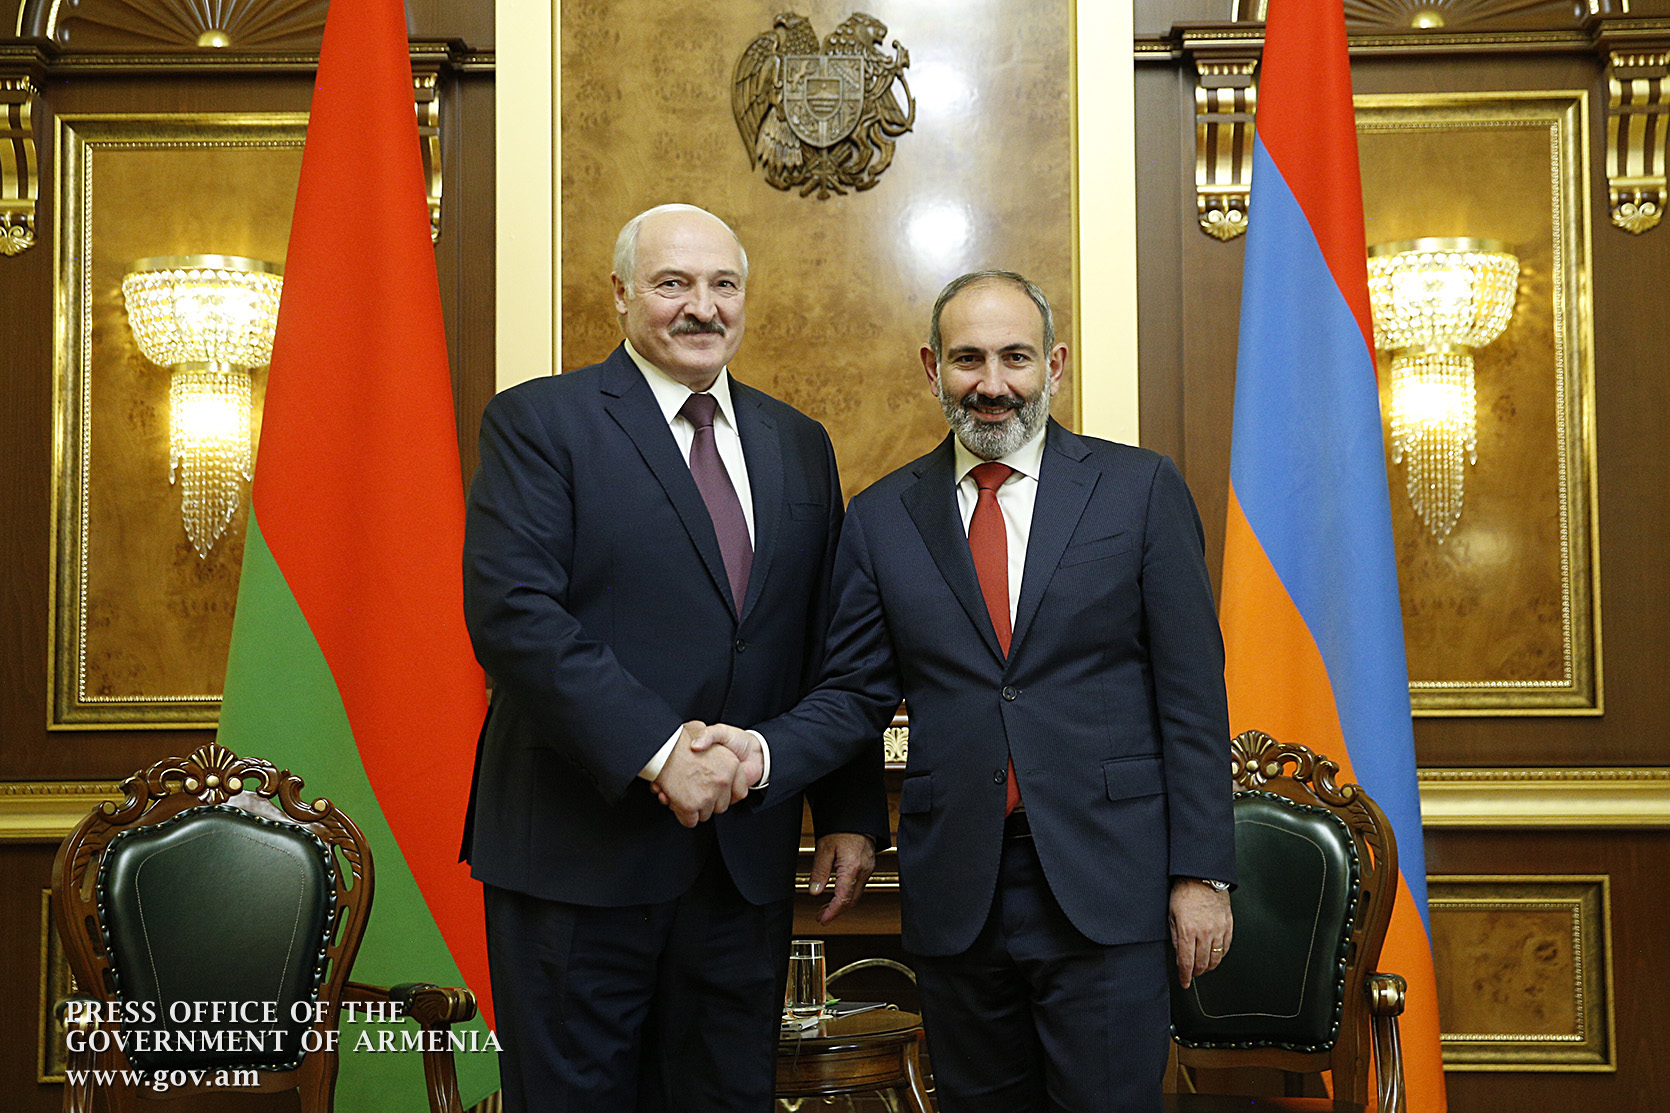 Пашинян поздравил Лукашенко по случаю переизбрания на пост президента Белоруссии 